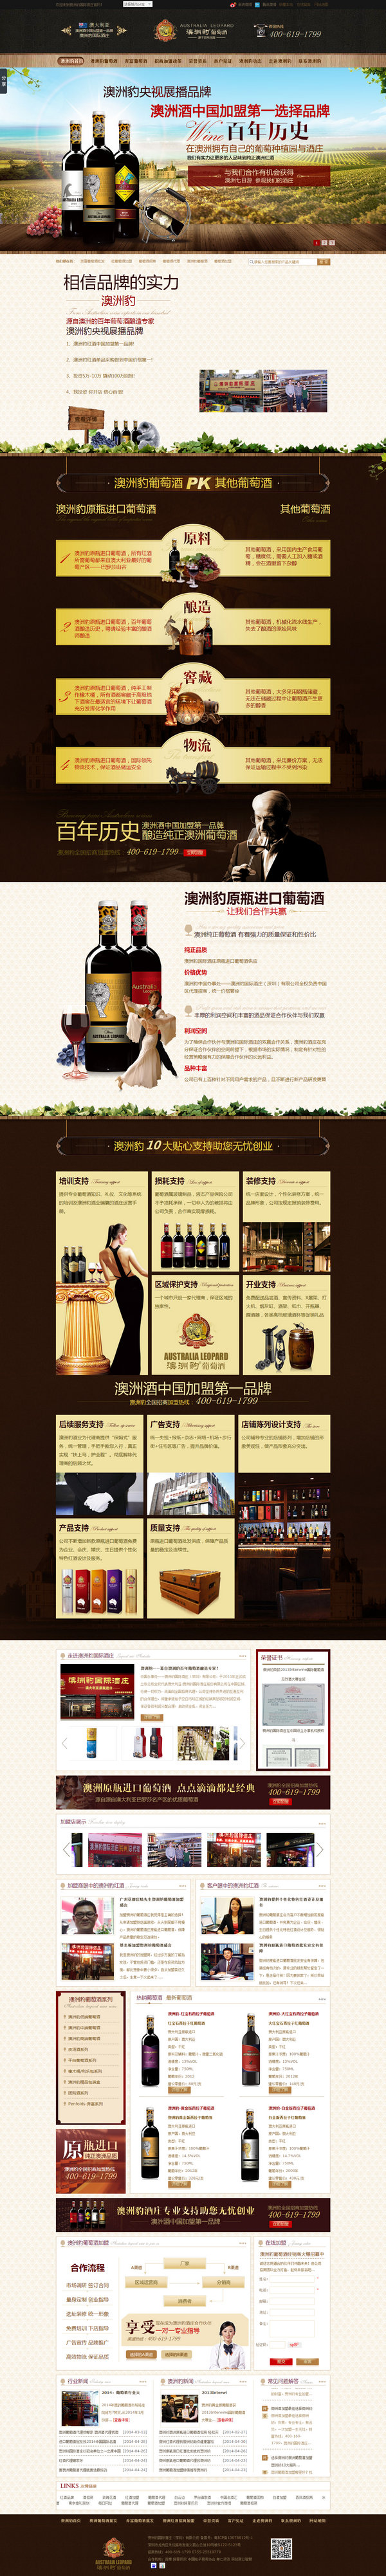 澳洲豹国际酒庄营销型网站